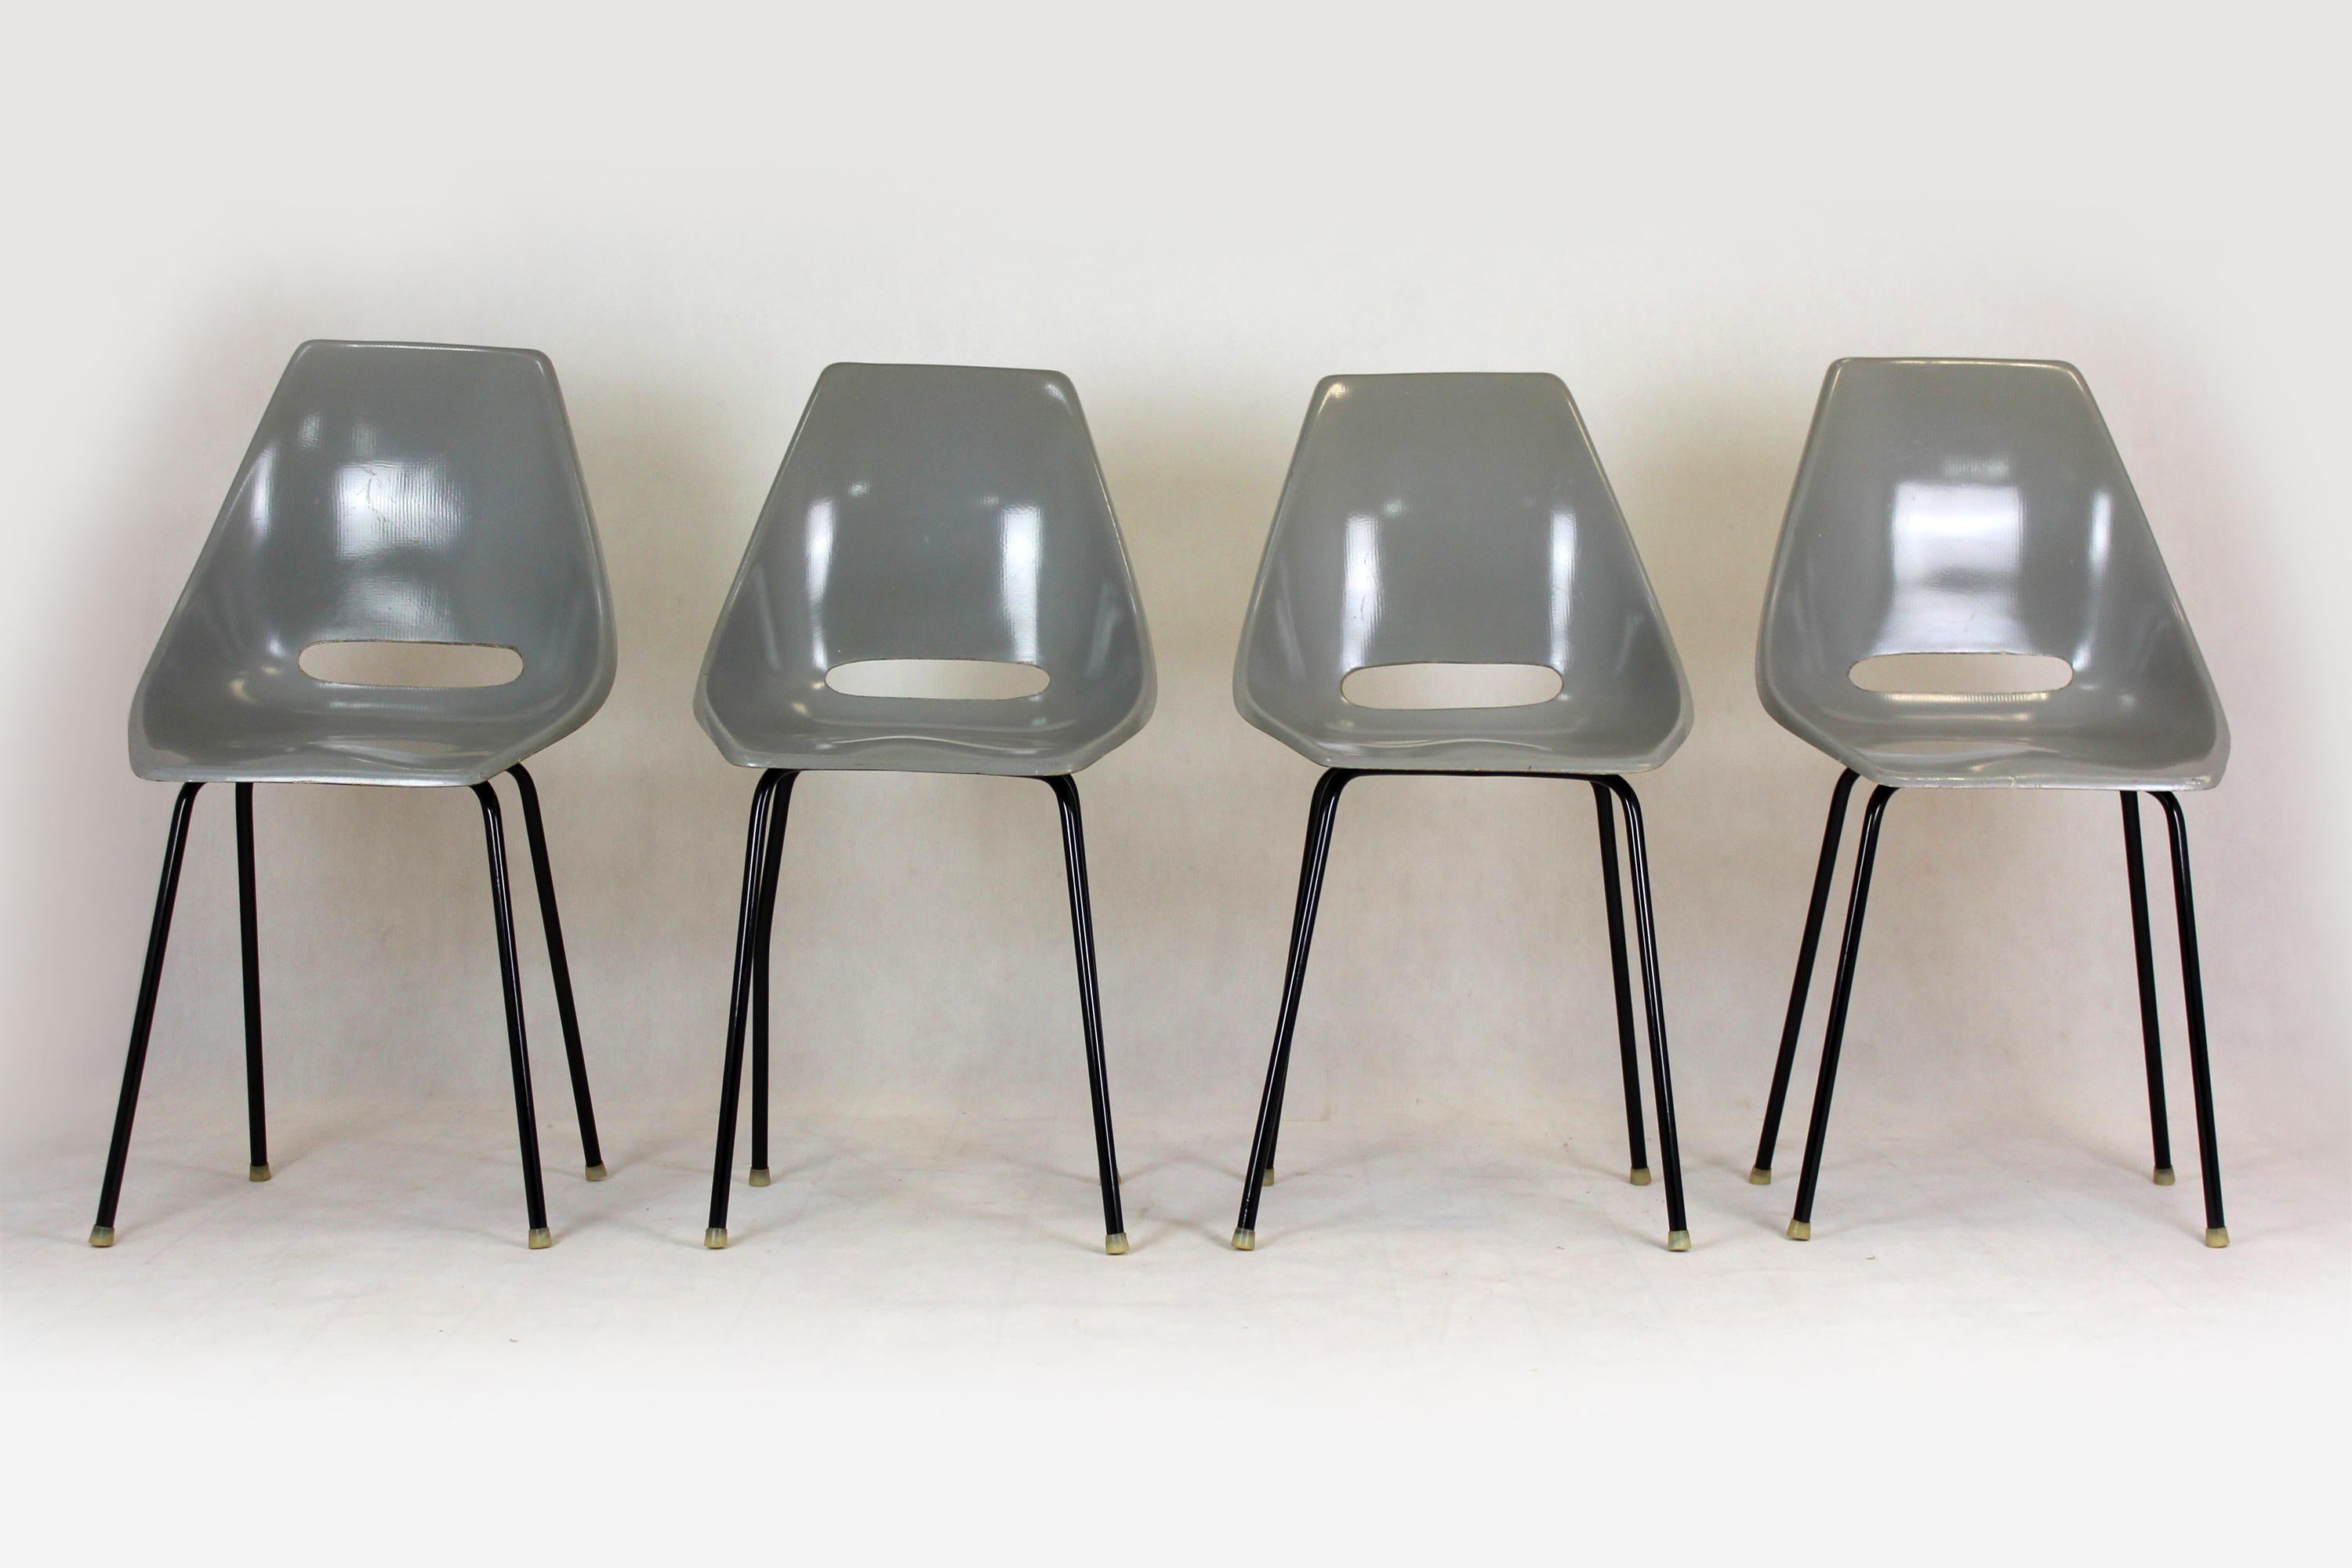 Un ensemble de quatre chaises fabriquées par Vertex dans les années 1960 en Tchécoslovaquie. Ces fauteuils ont été conçus par Miroslav Navratil en 1964, initialement utilisés dans les tramways Tatra T3 - le tramway le plus répandu au monde,